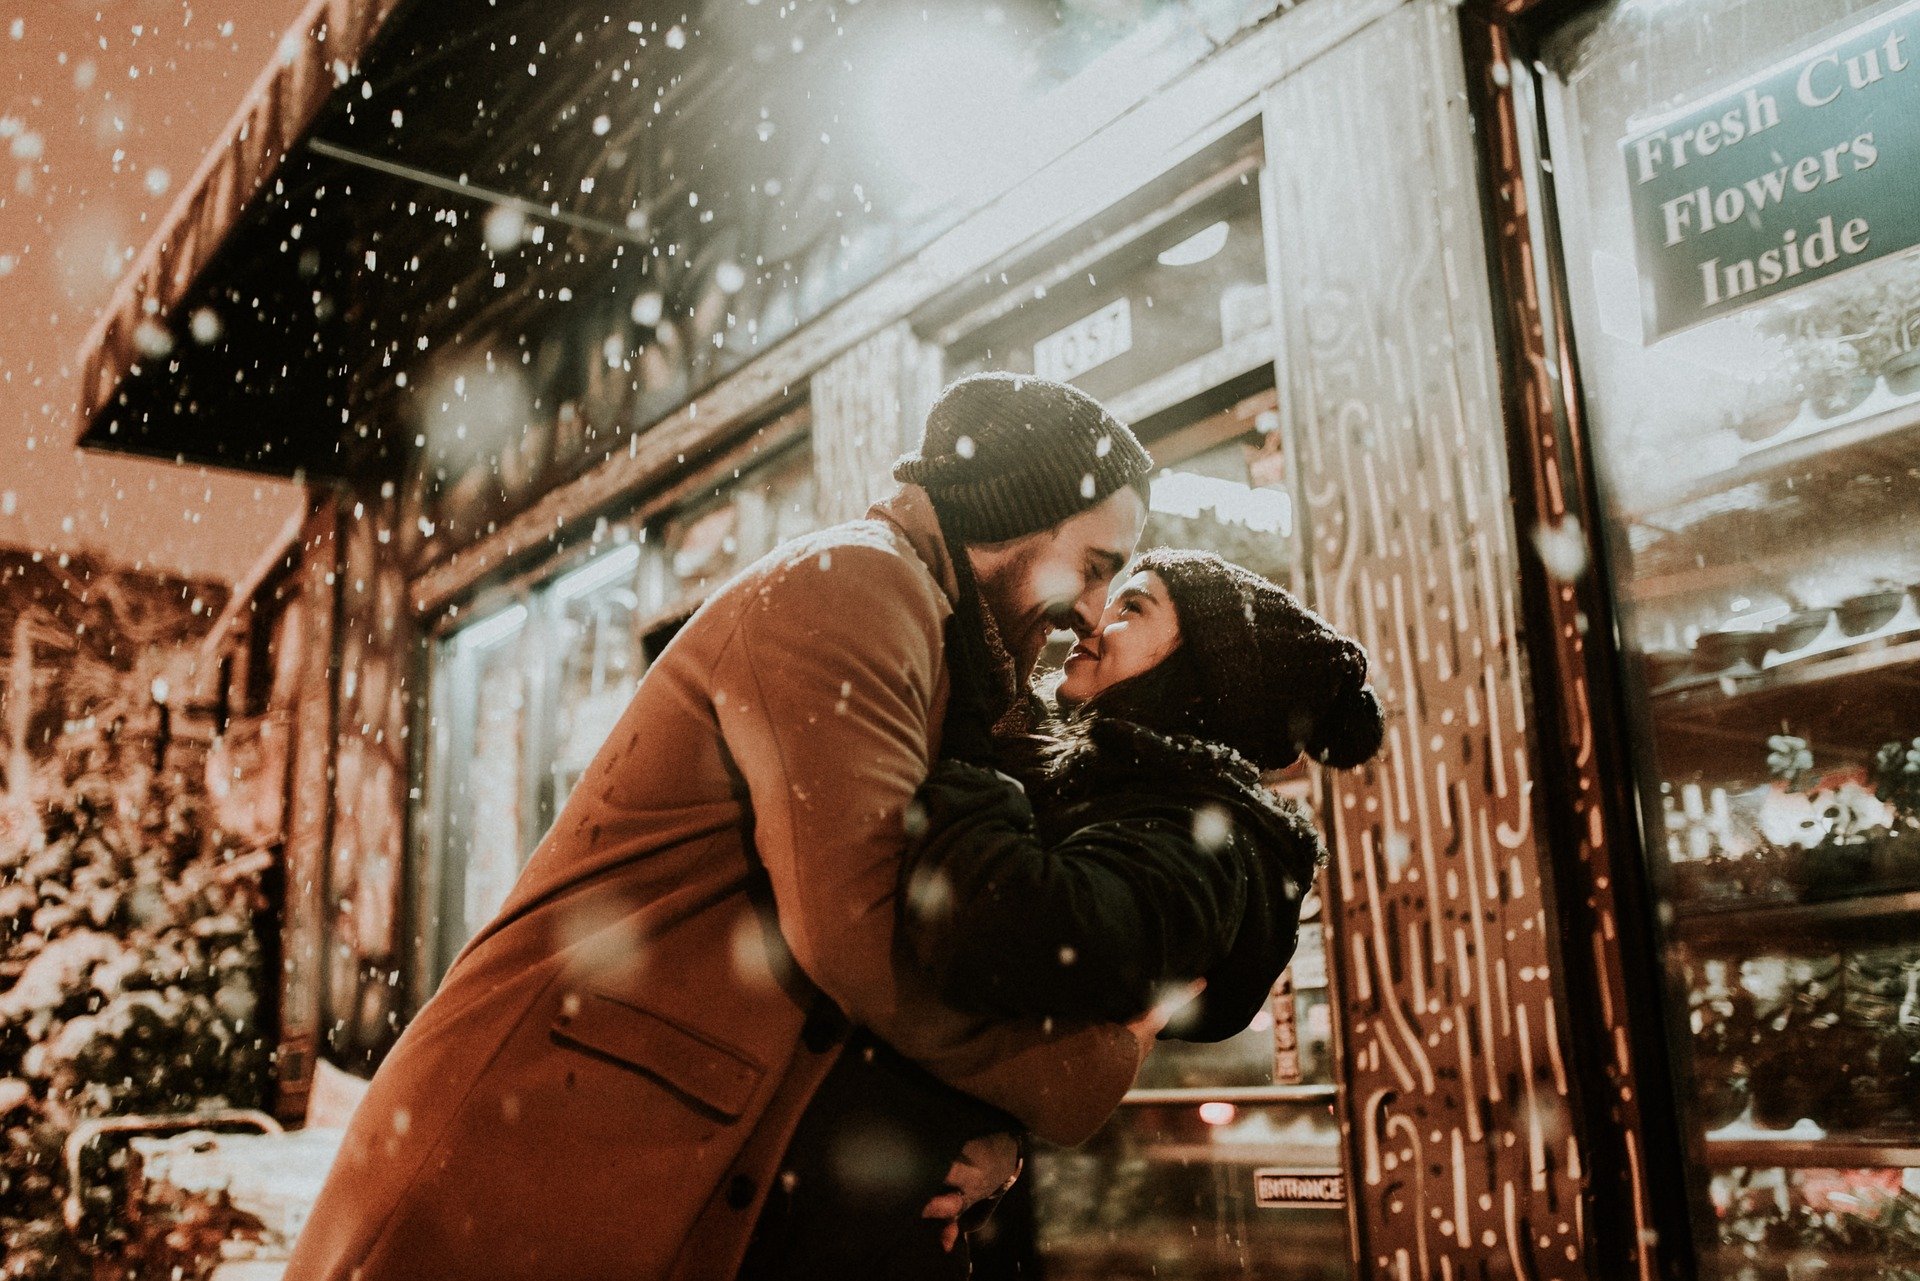 街头店面前 一对恩爱<span style='color:red;'>拥抱</span>的欧美情侣，爱人高清壁纸图片 冬季，下雪天